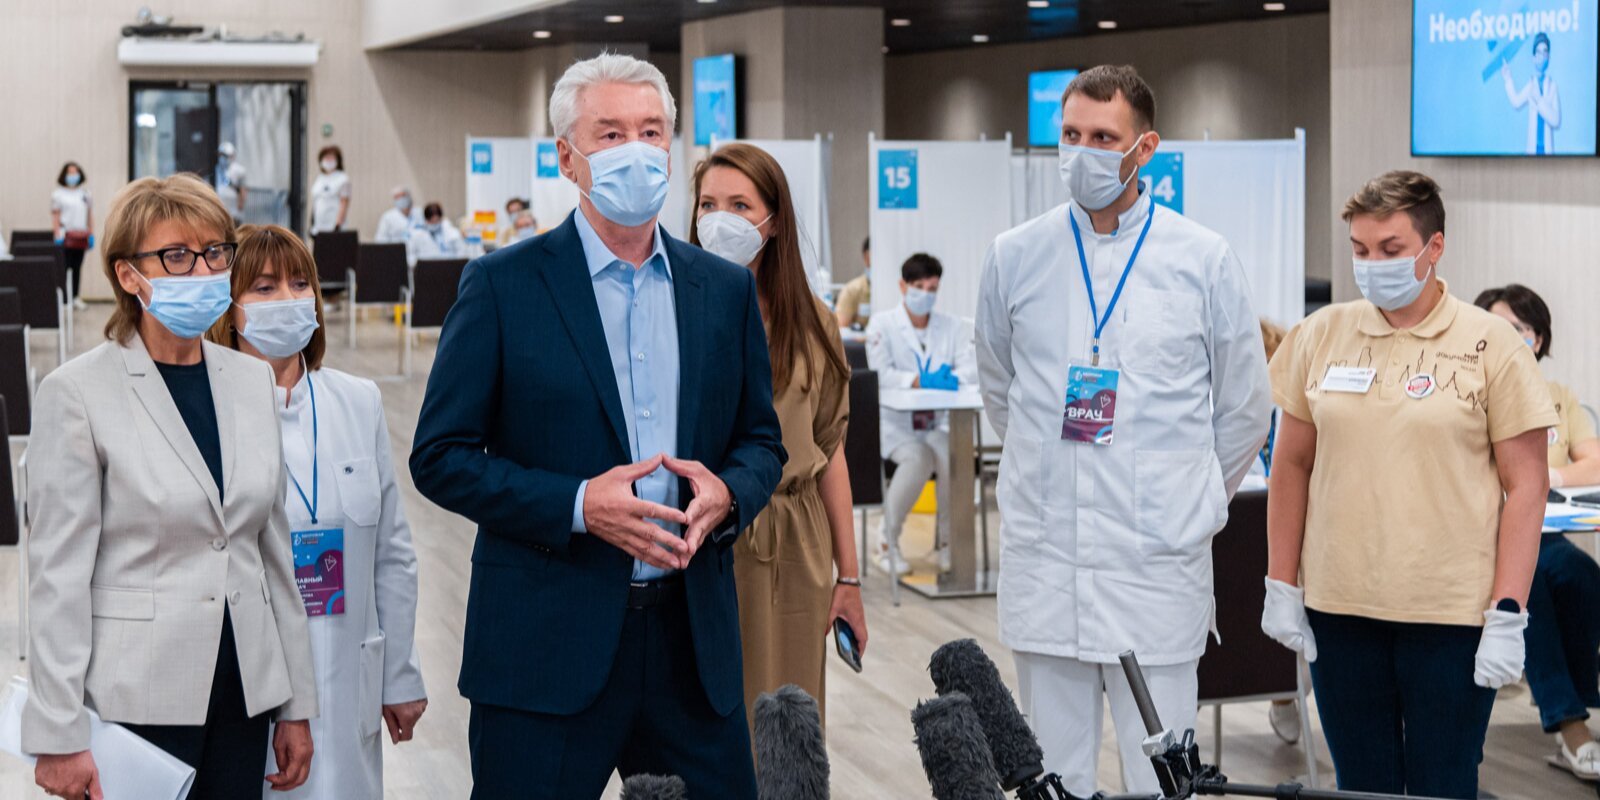 Мэр Москвы Сергей Собянин открывает центр вакцинации от COVID-19 в Лужниках